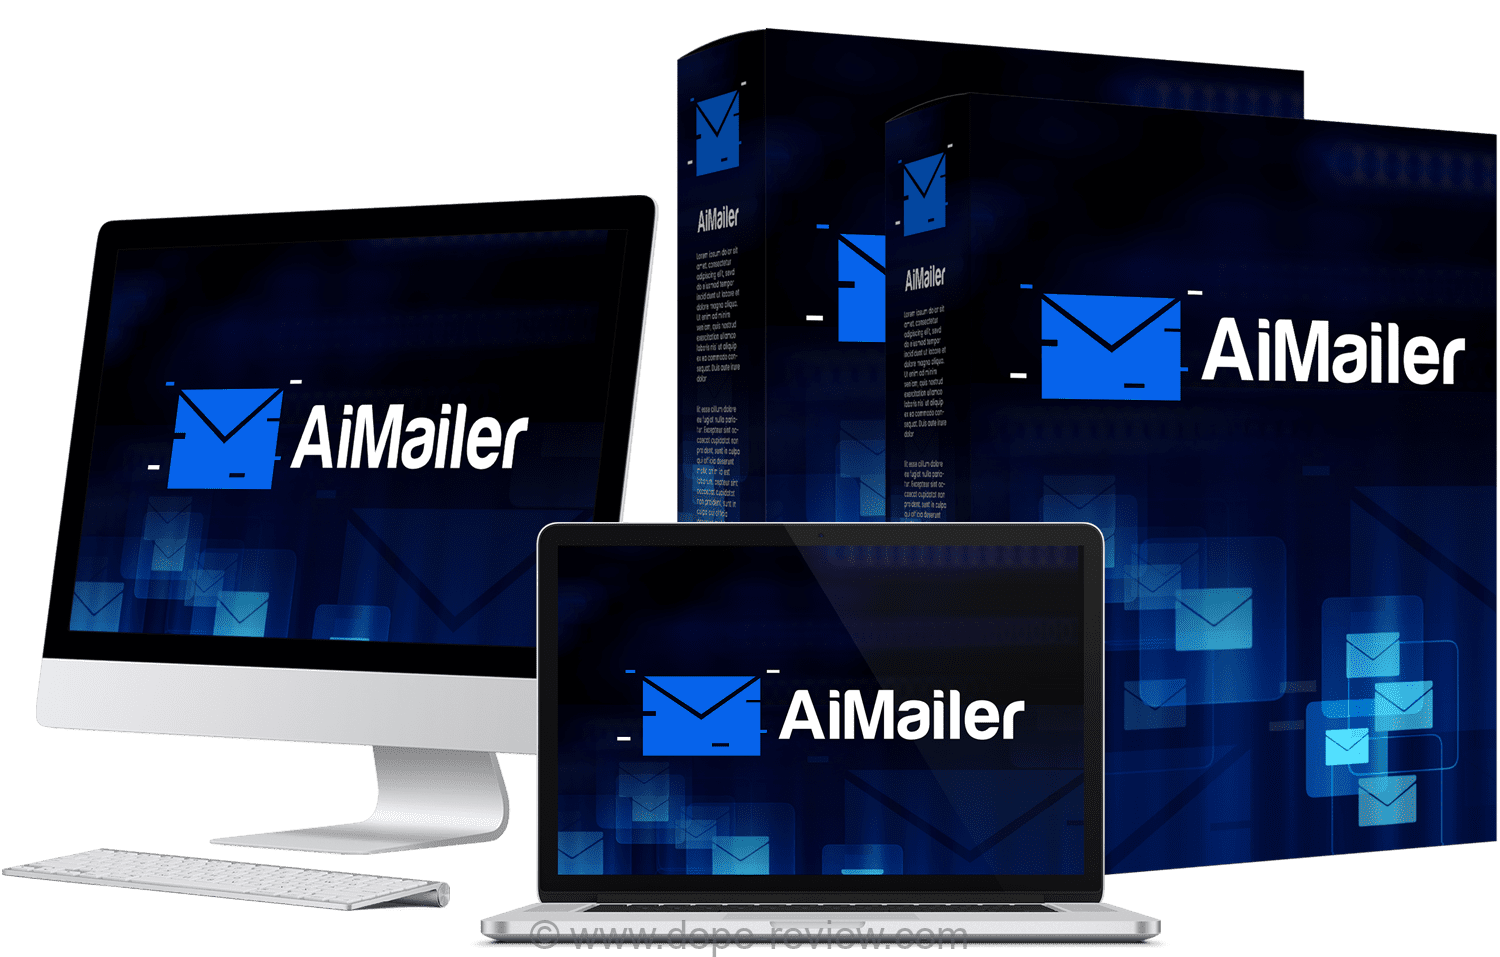 A.I Mailer Review